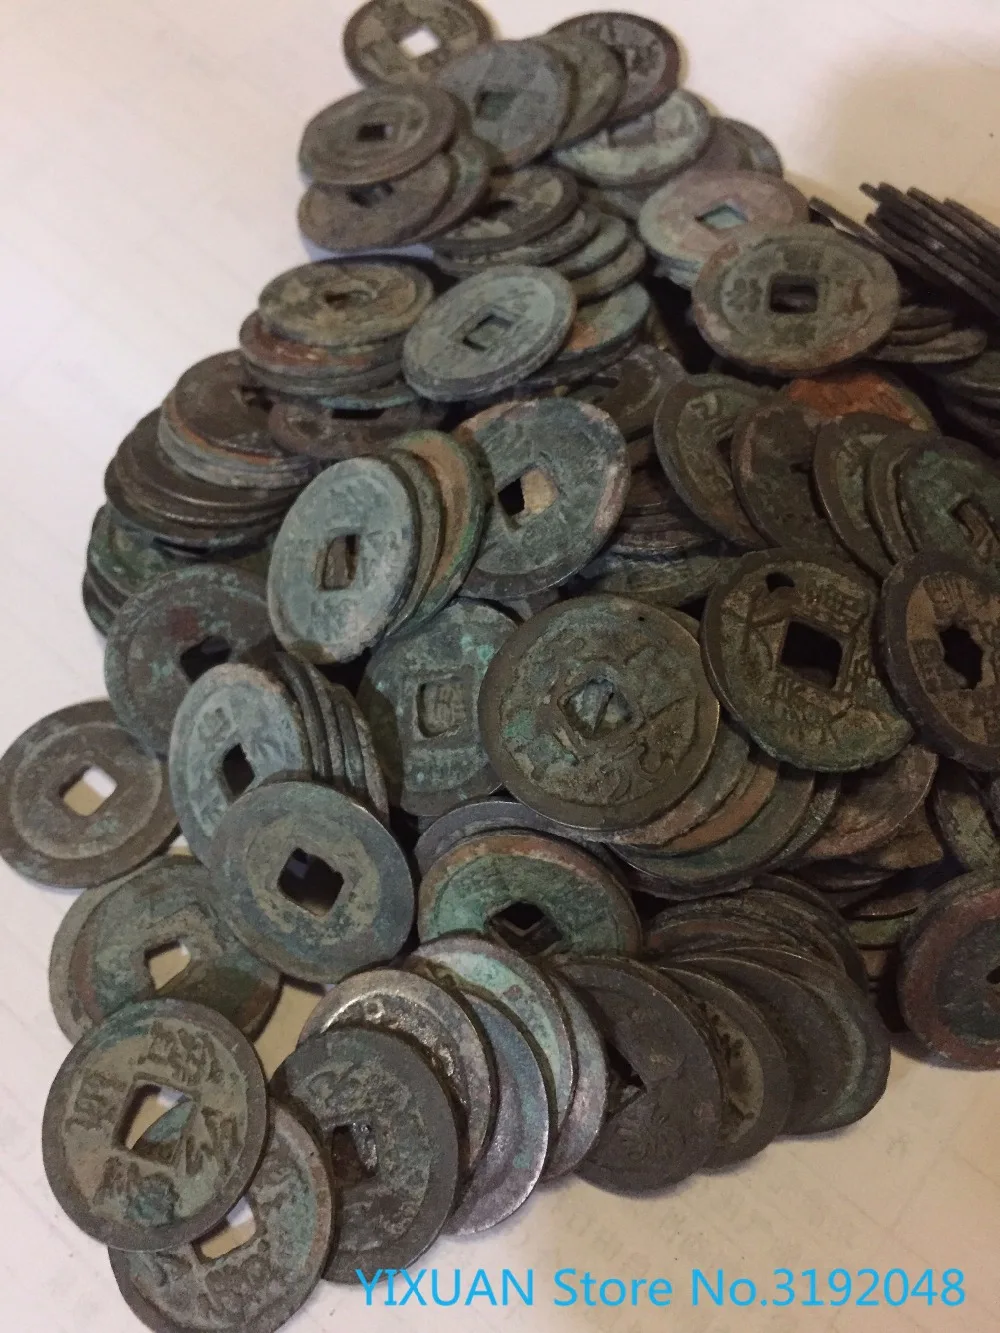 Собрать 20 штук китайской медной монеты старой династии антикварной валюты, отправленной наугад